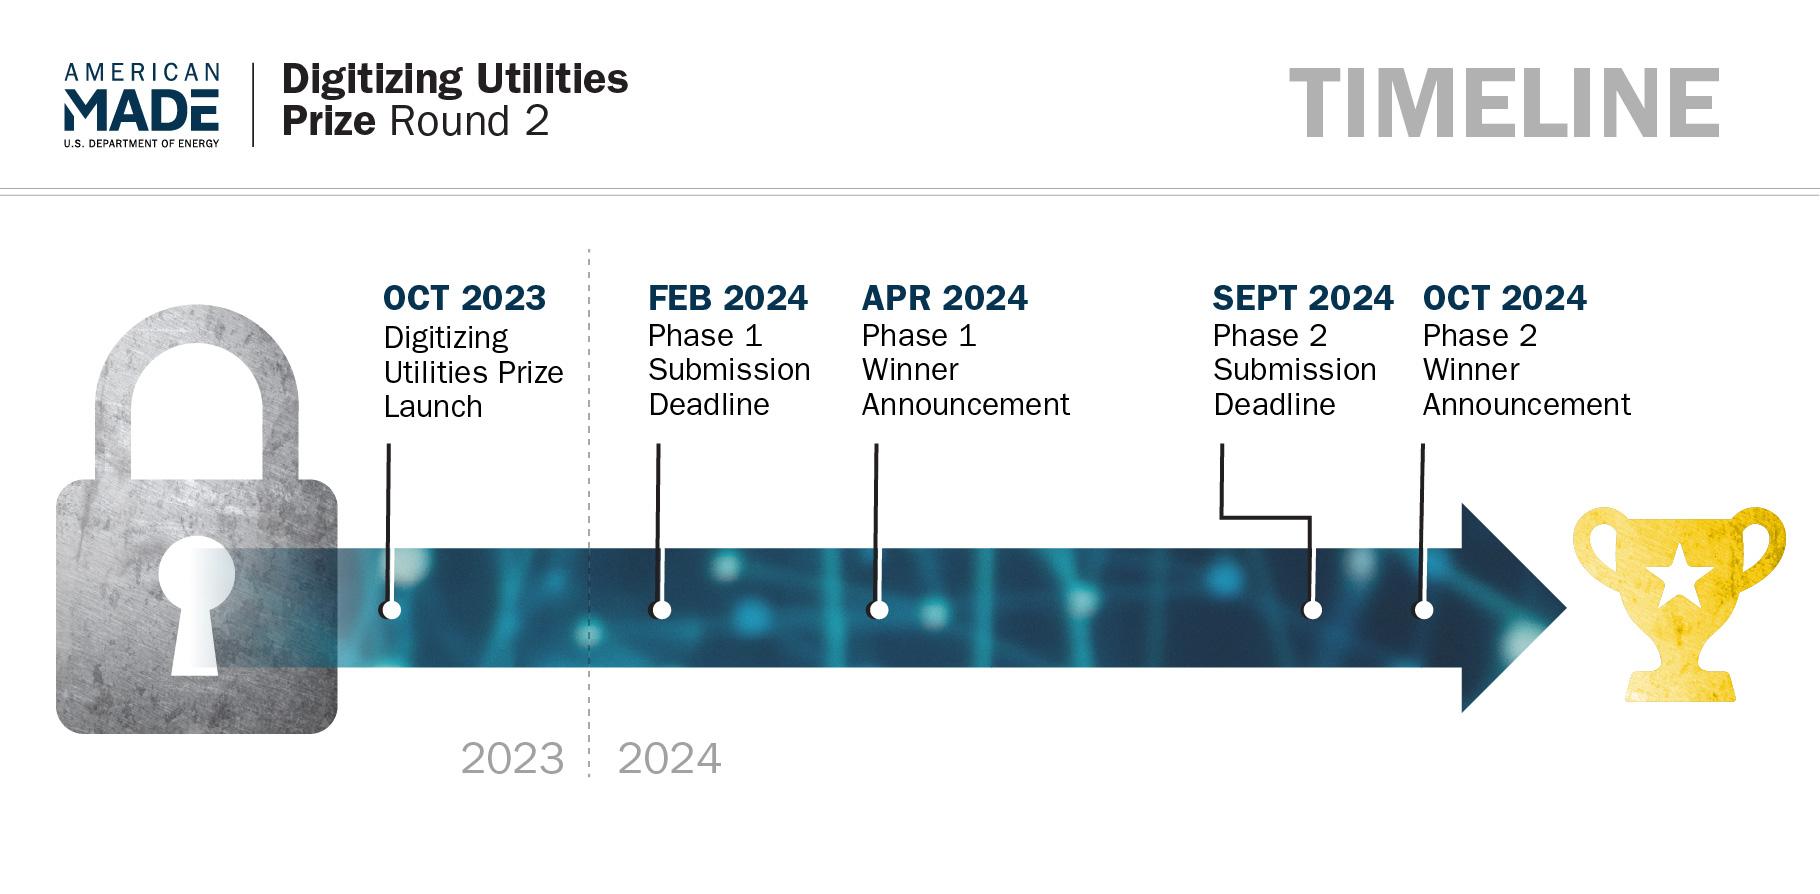 timeline of digitizing utilities round 2